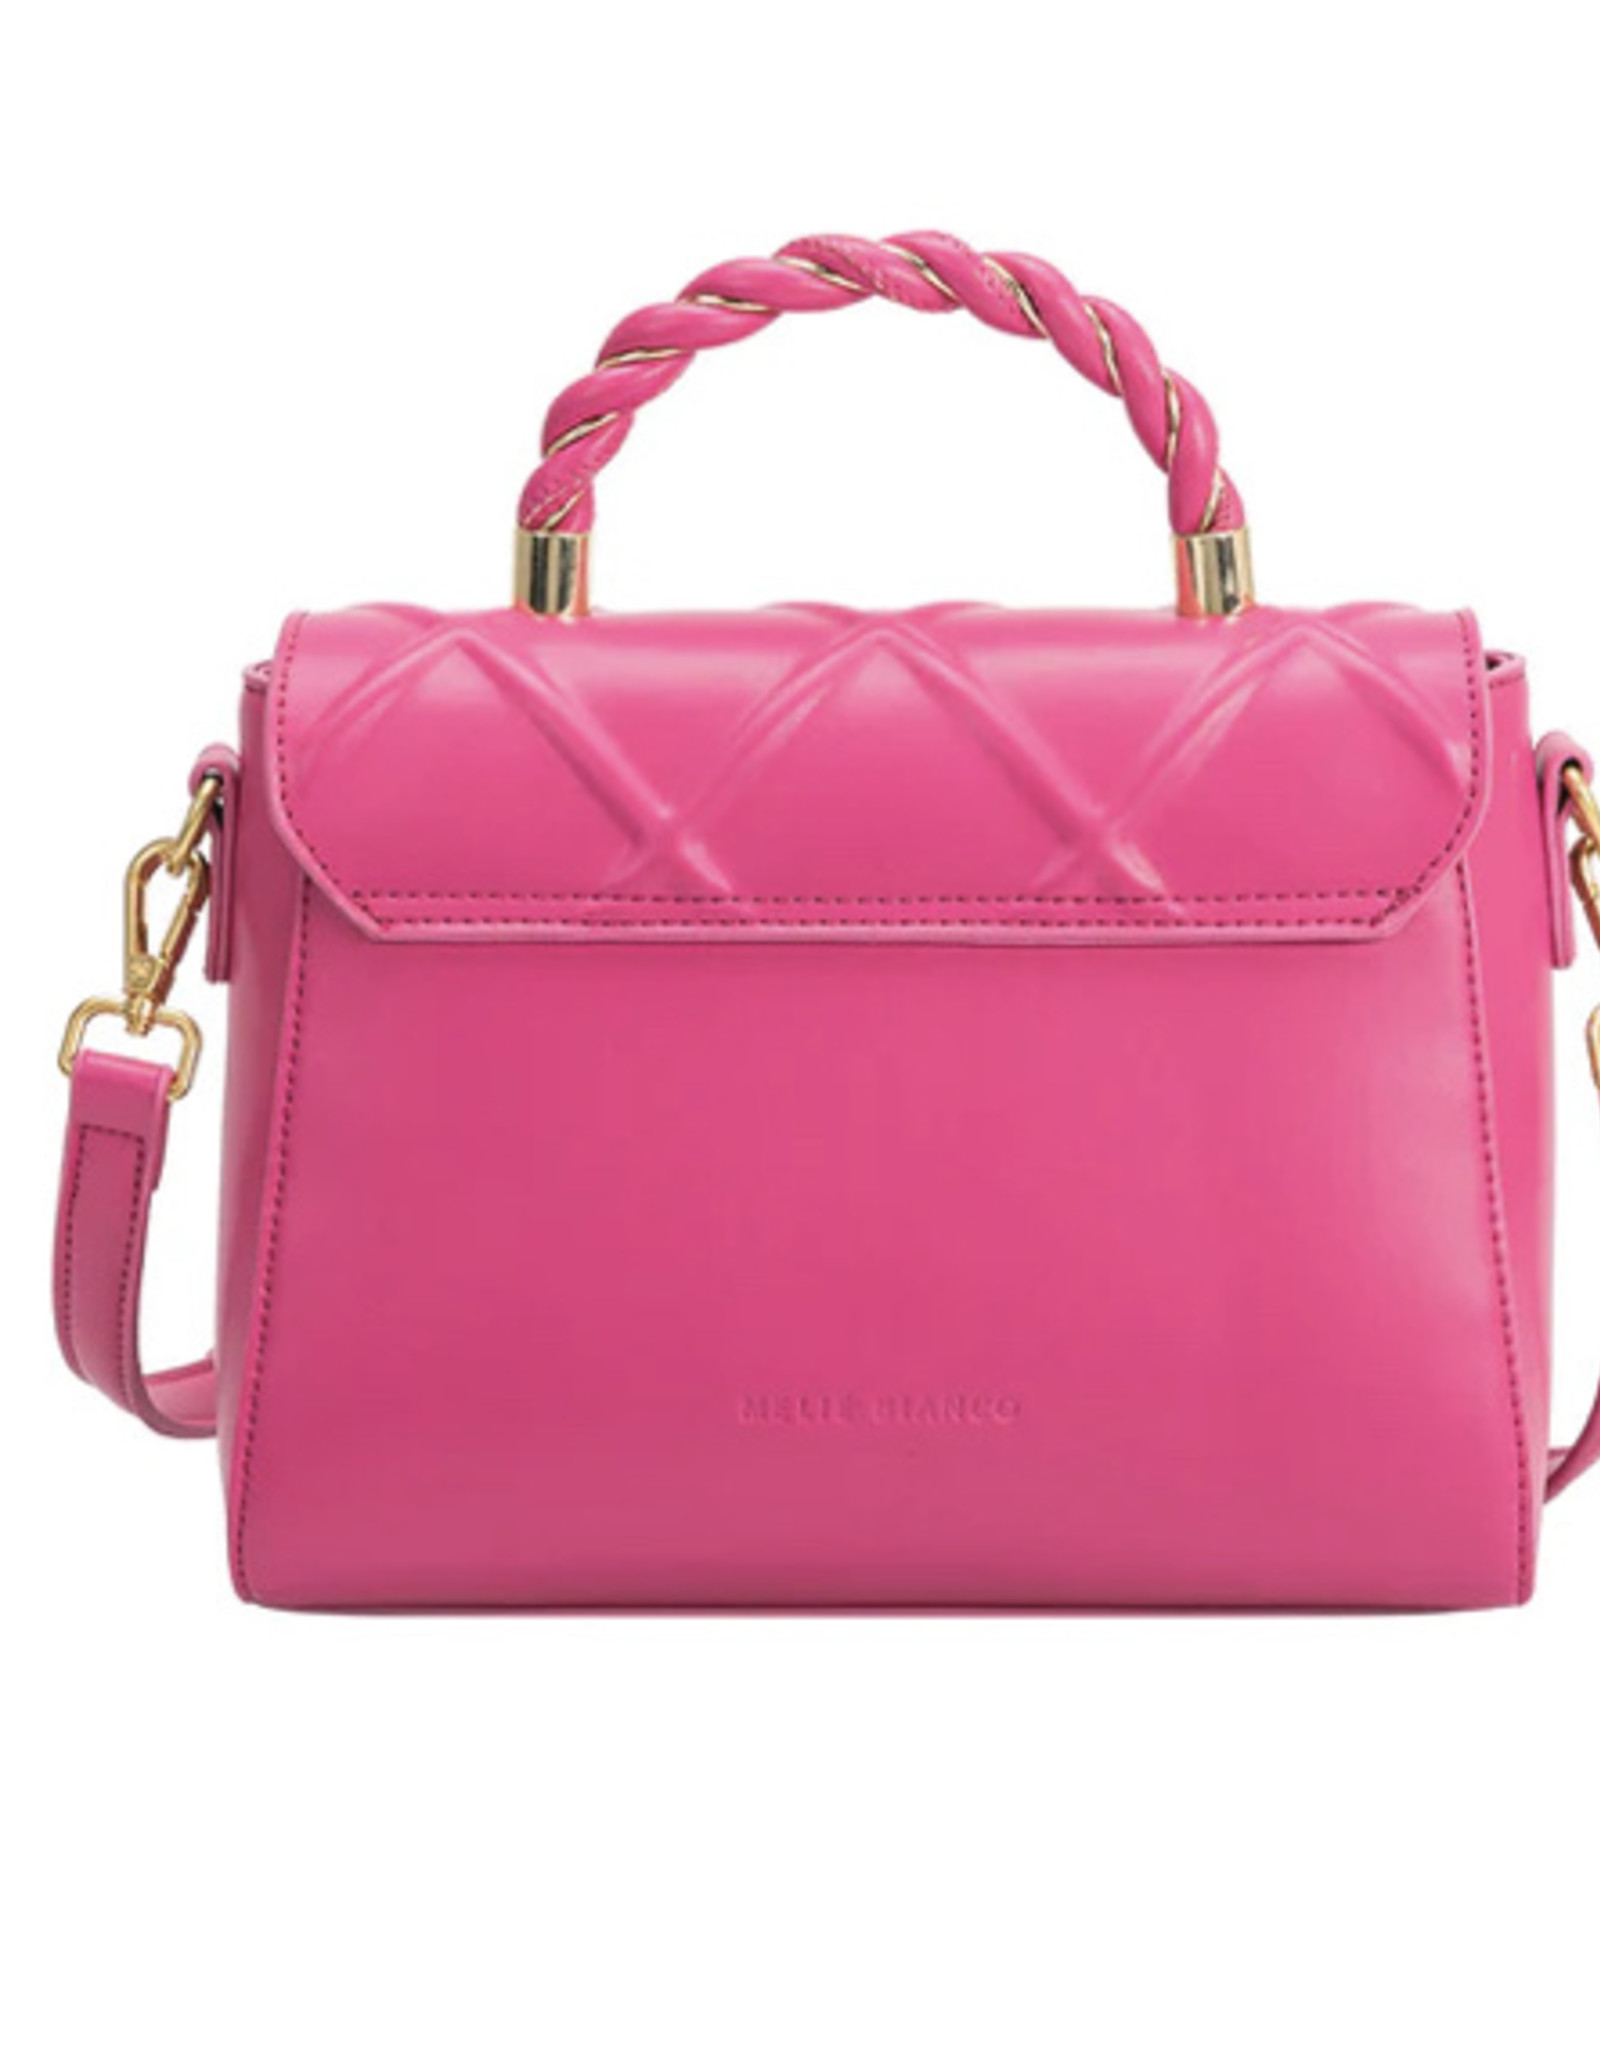 Melie Bianco Ruby Pink Vegan Top Handle Bag